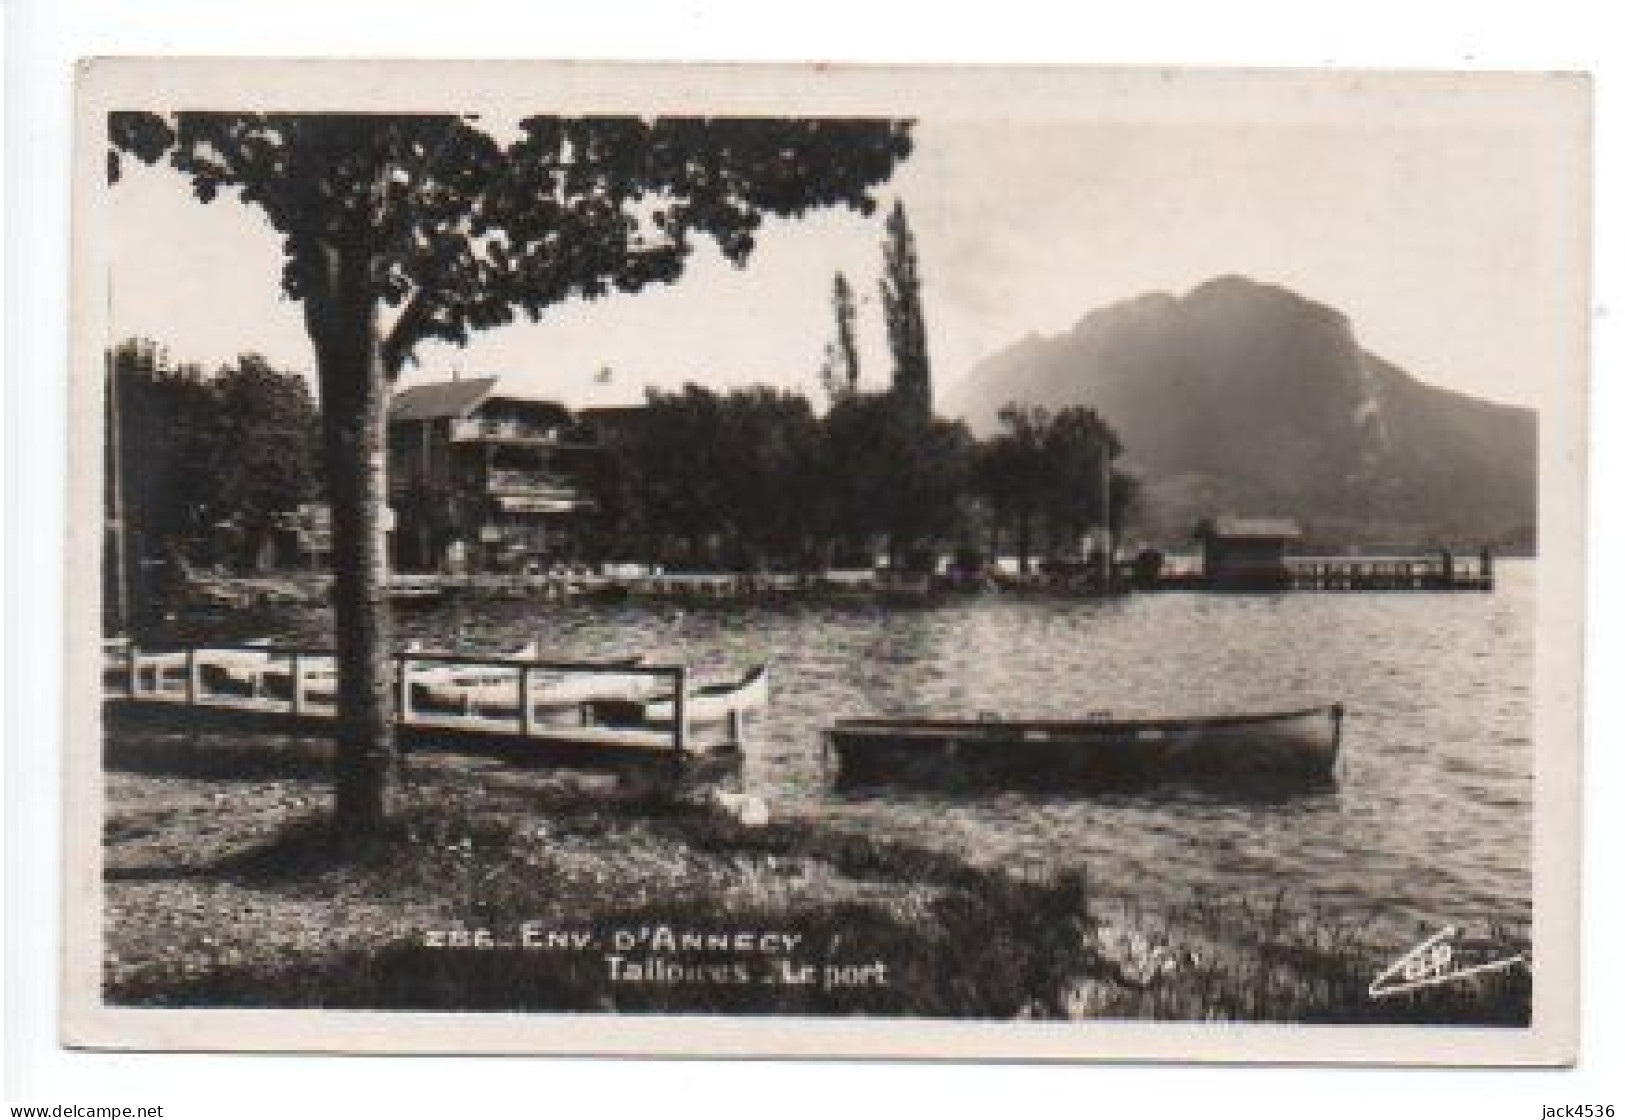 Carte Postale Moderne - 14 Cm X 9 Cm - Non Circulé - Dép. 74 - TALLOIRES - Port - Talloires